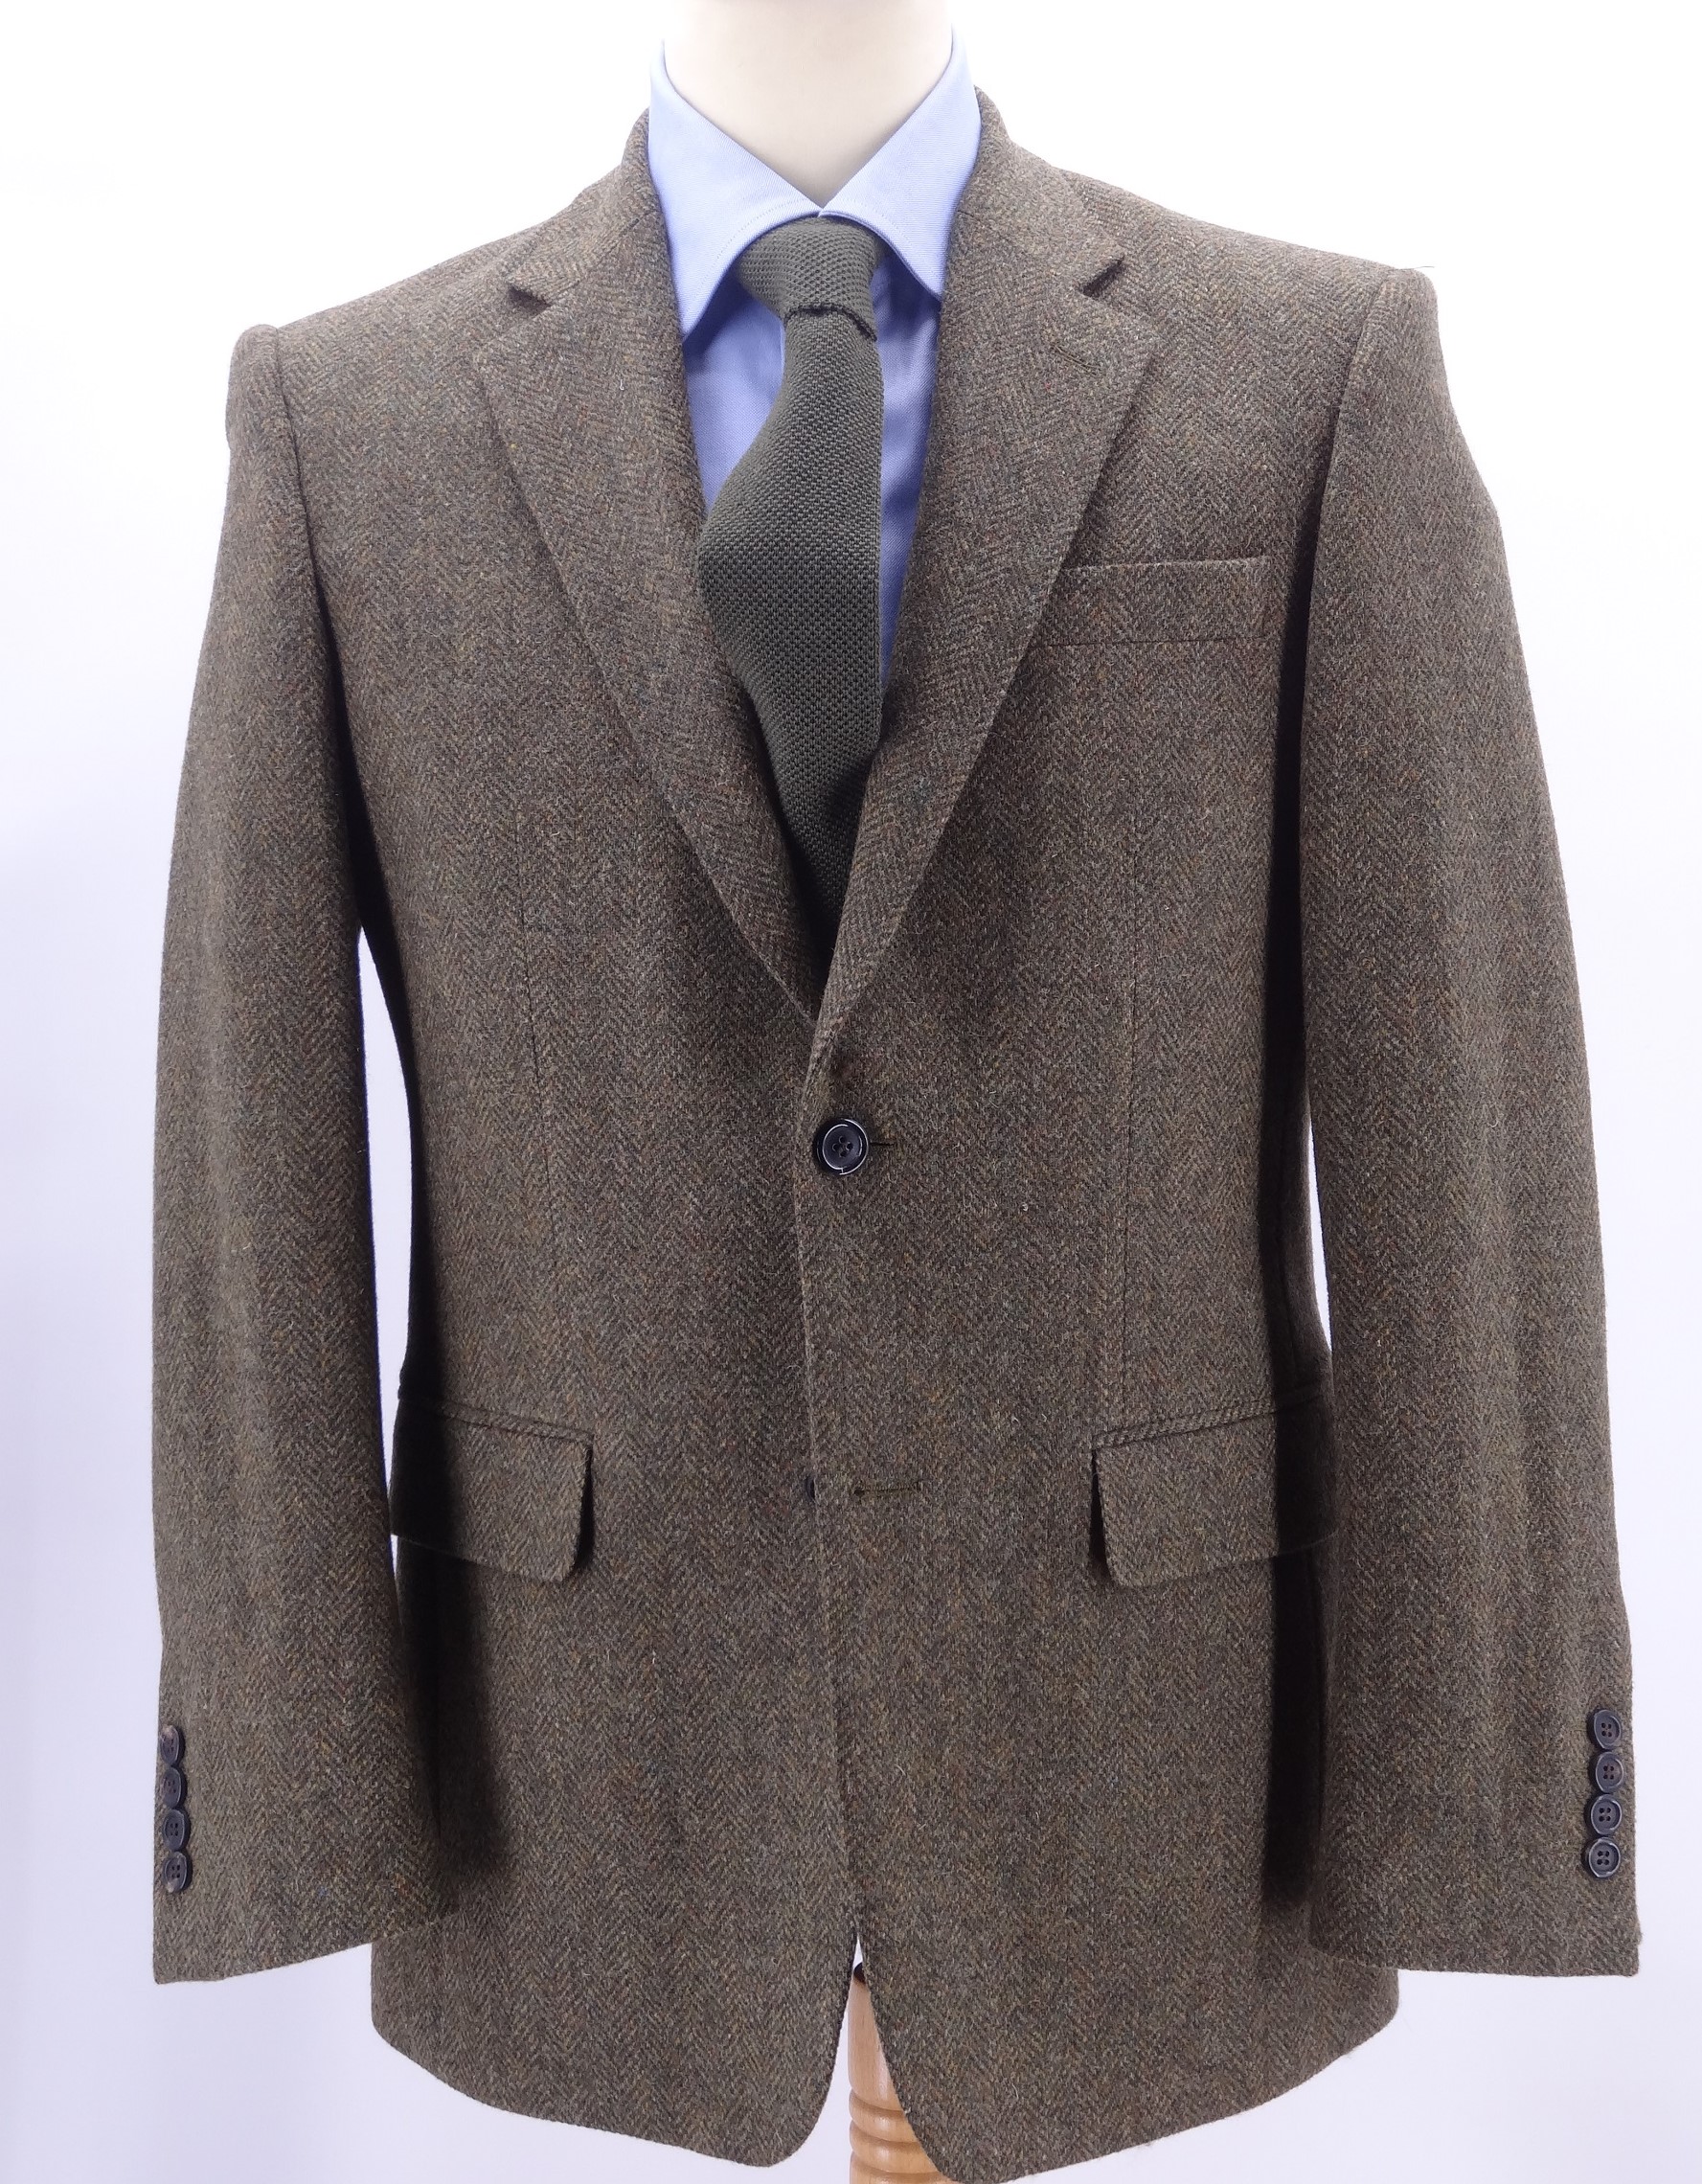 Tweed Jacket (herringbone)